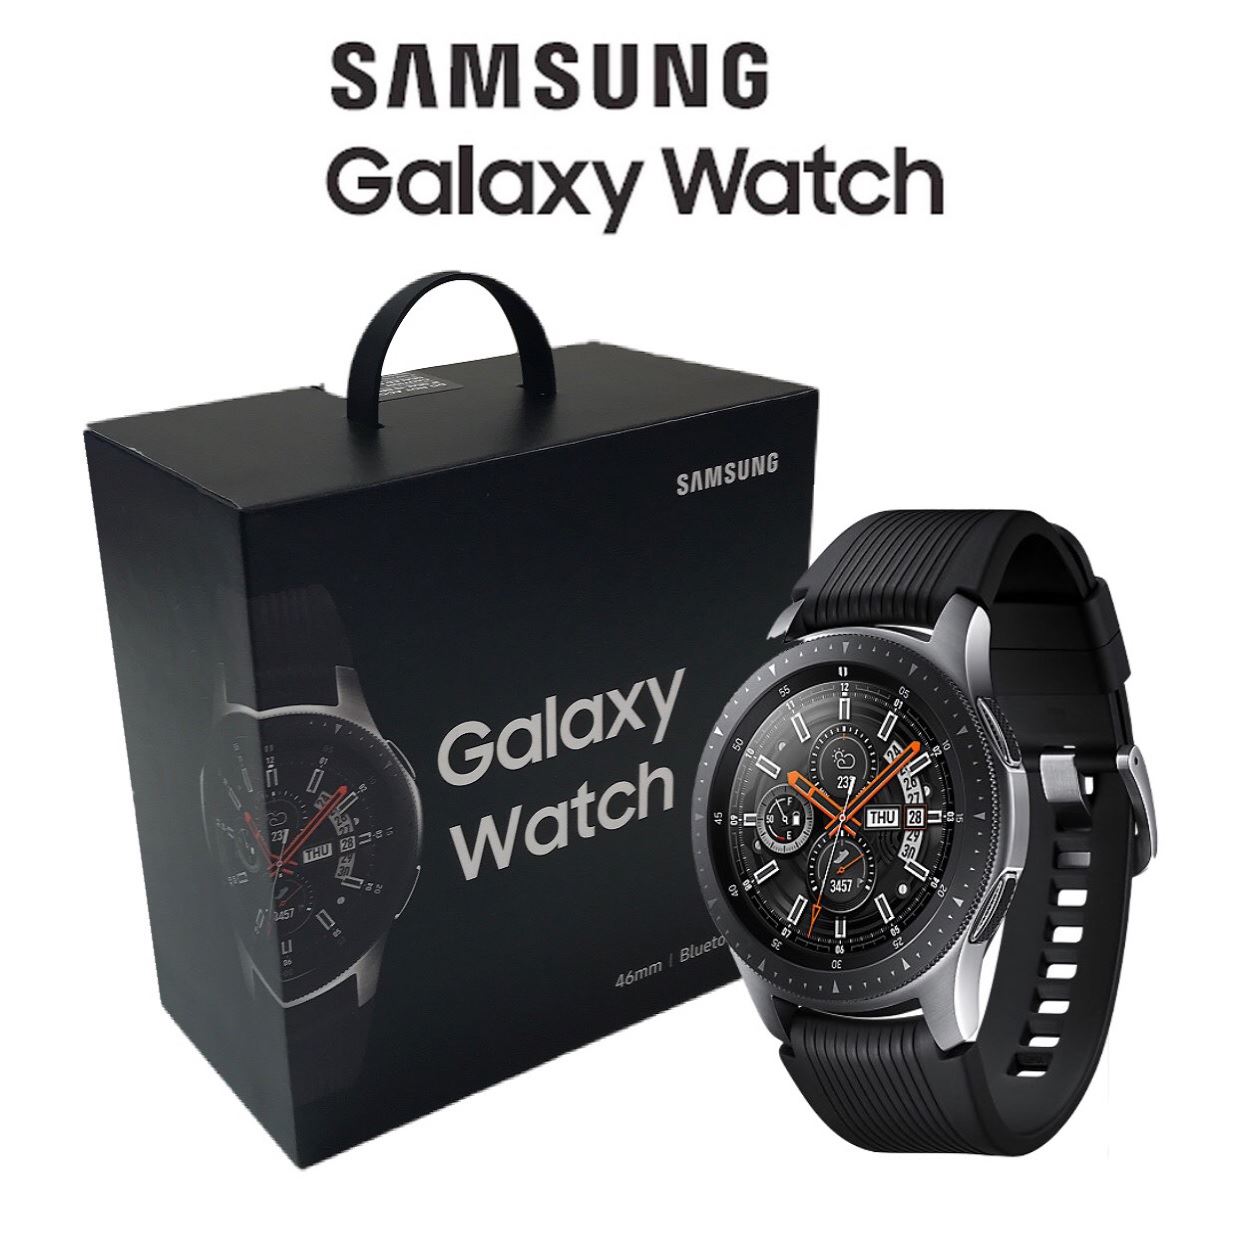 Samsung watch sm r800. Samsung Galaxy watch SM-r800. Samsung Galaxy watch 46mm SM-r800 Silver. Galaxy watch 46mm SM-r800. Samsung r800 46mm.